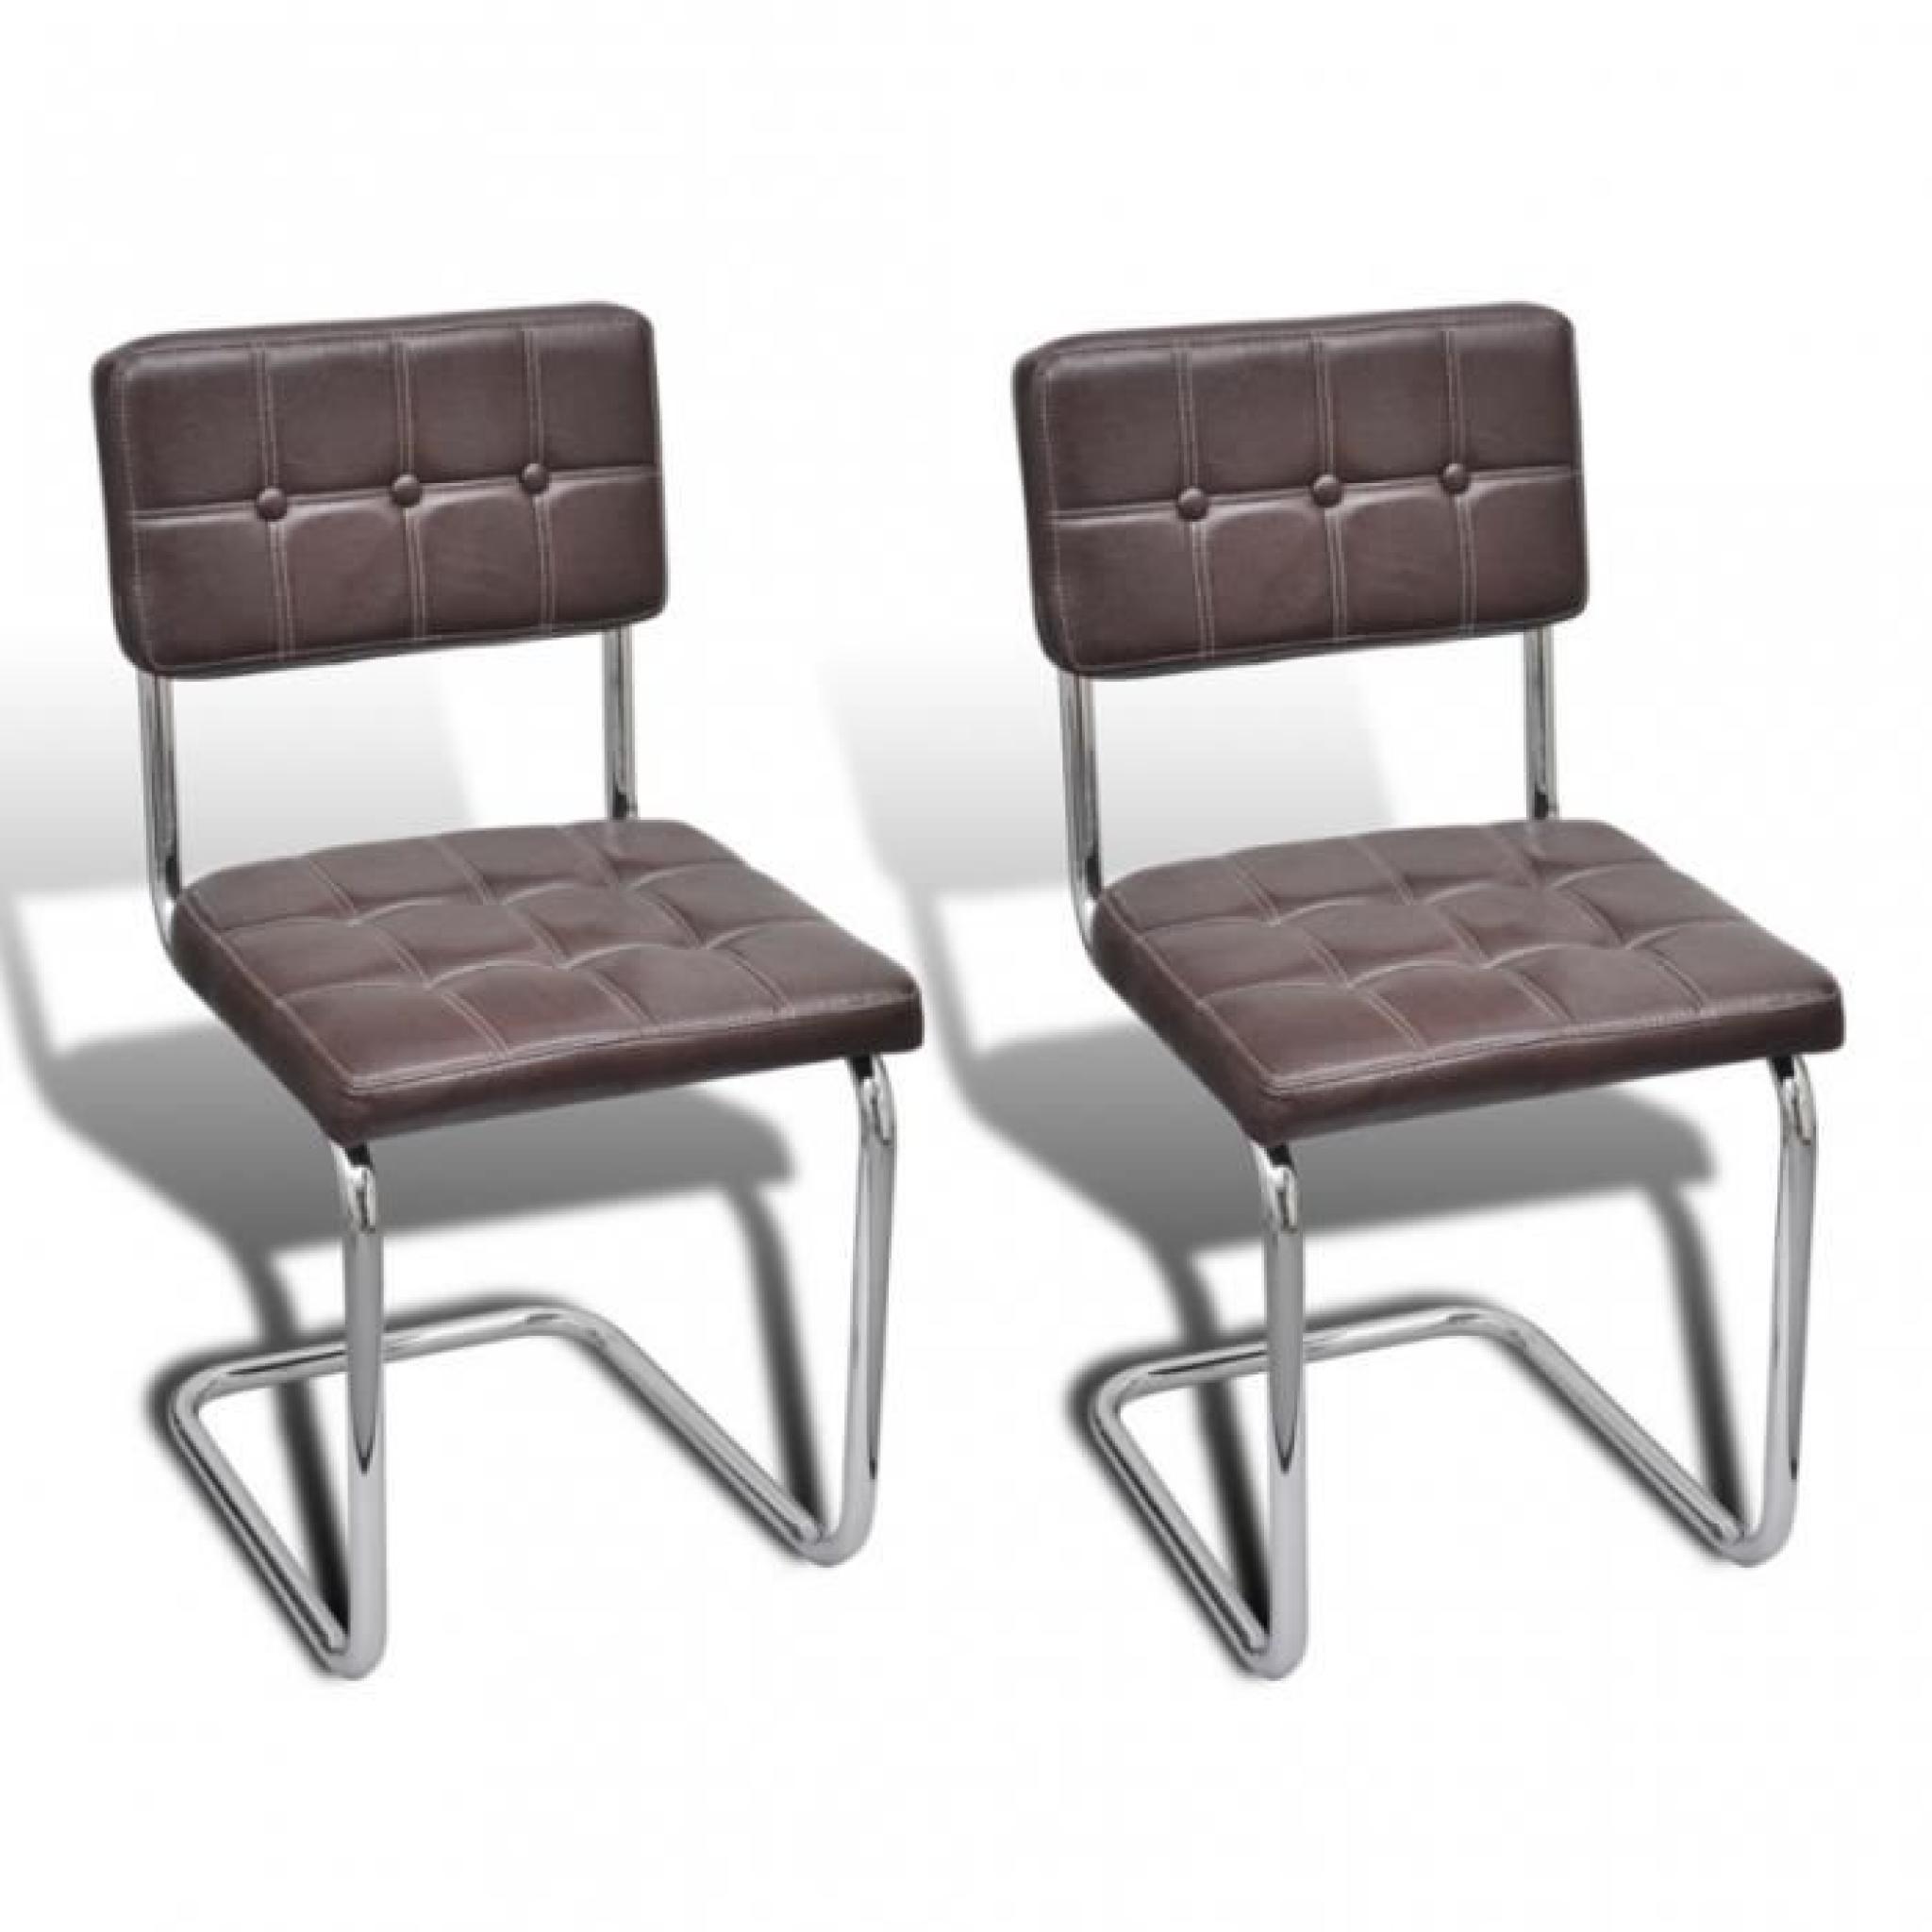 Ce set de 2 chaises de salle à manger en PU apporteront une touche élégante à votre maison. Vous pouvez trouver un équilibre entr...